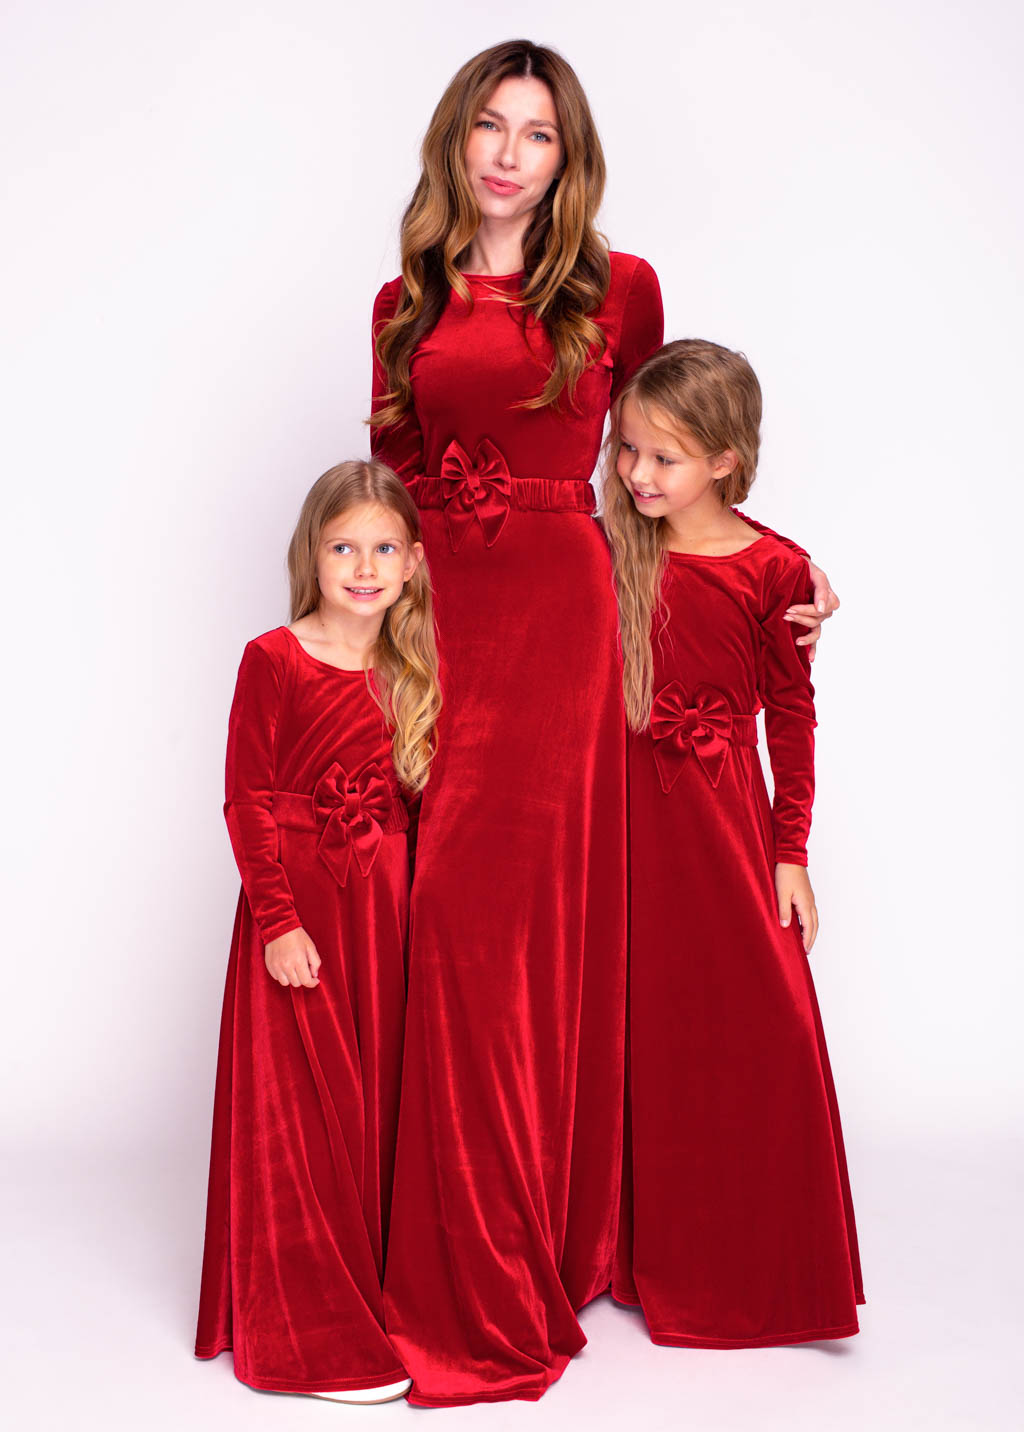 Mommy and me red long velvet dresses